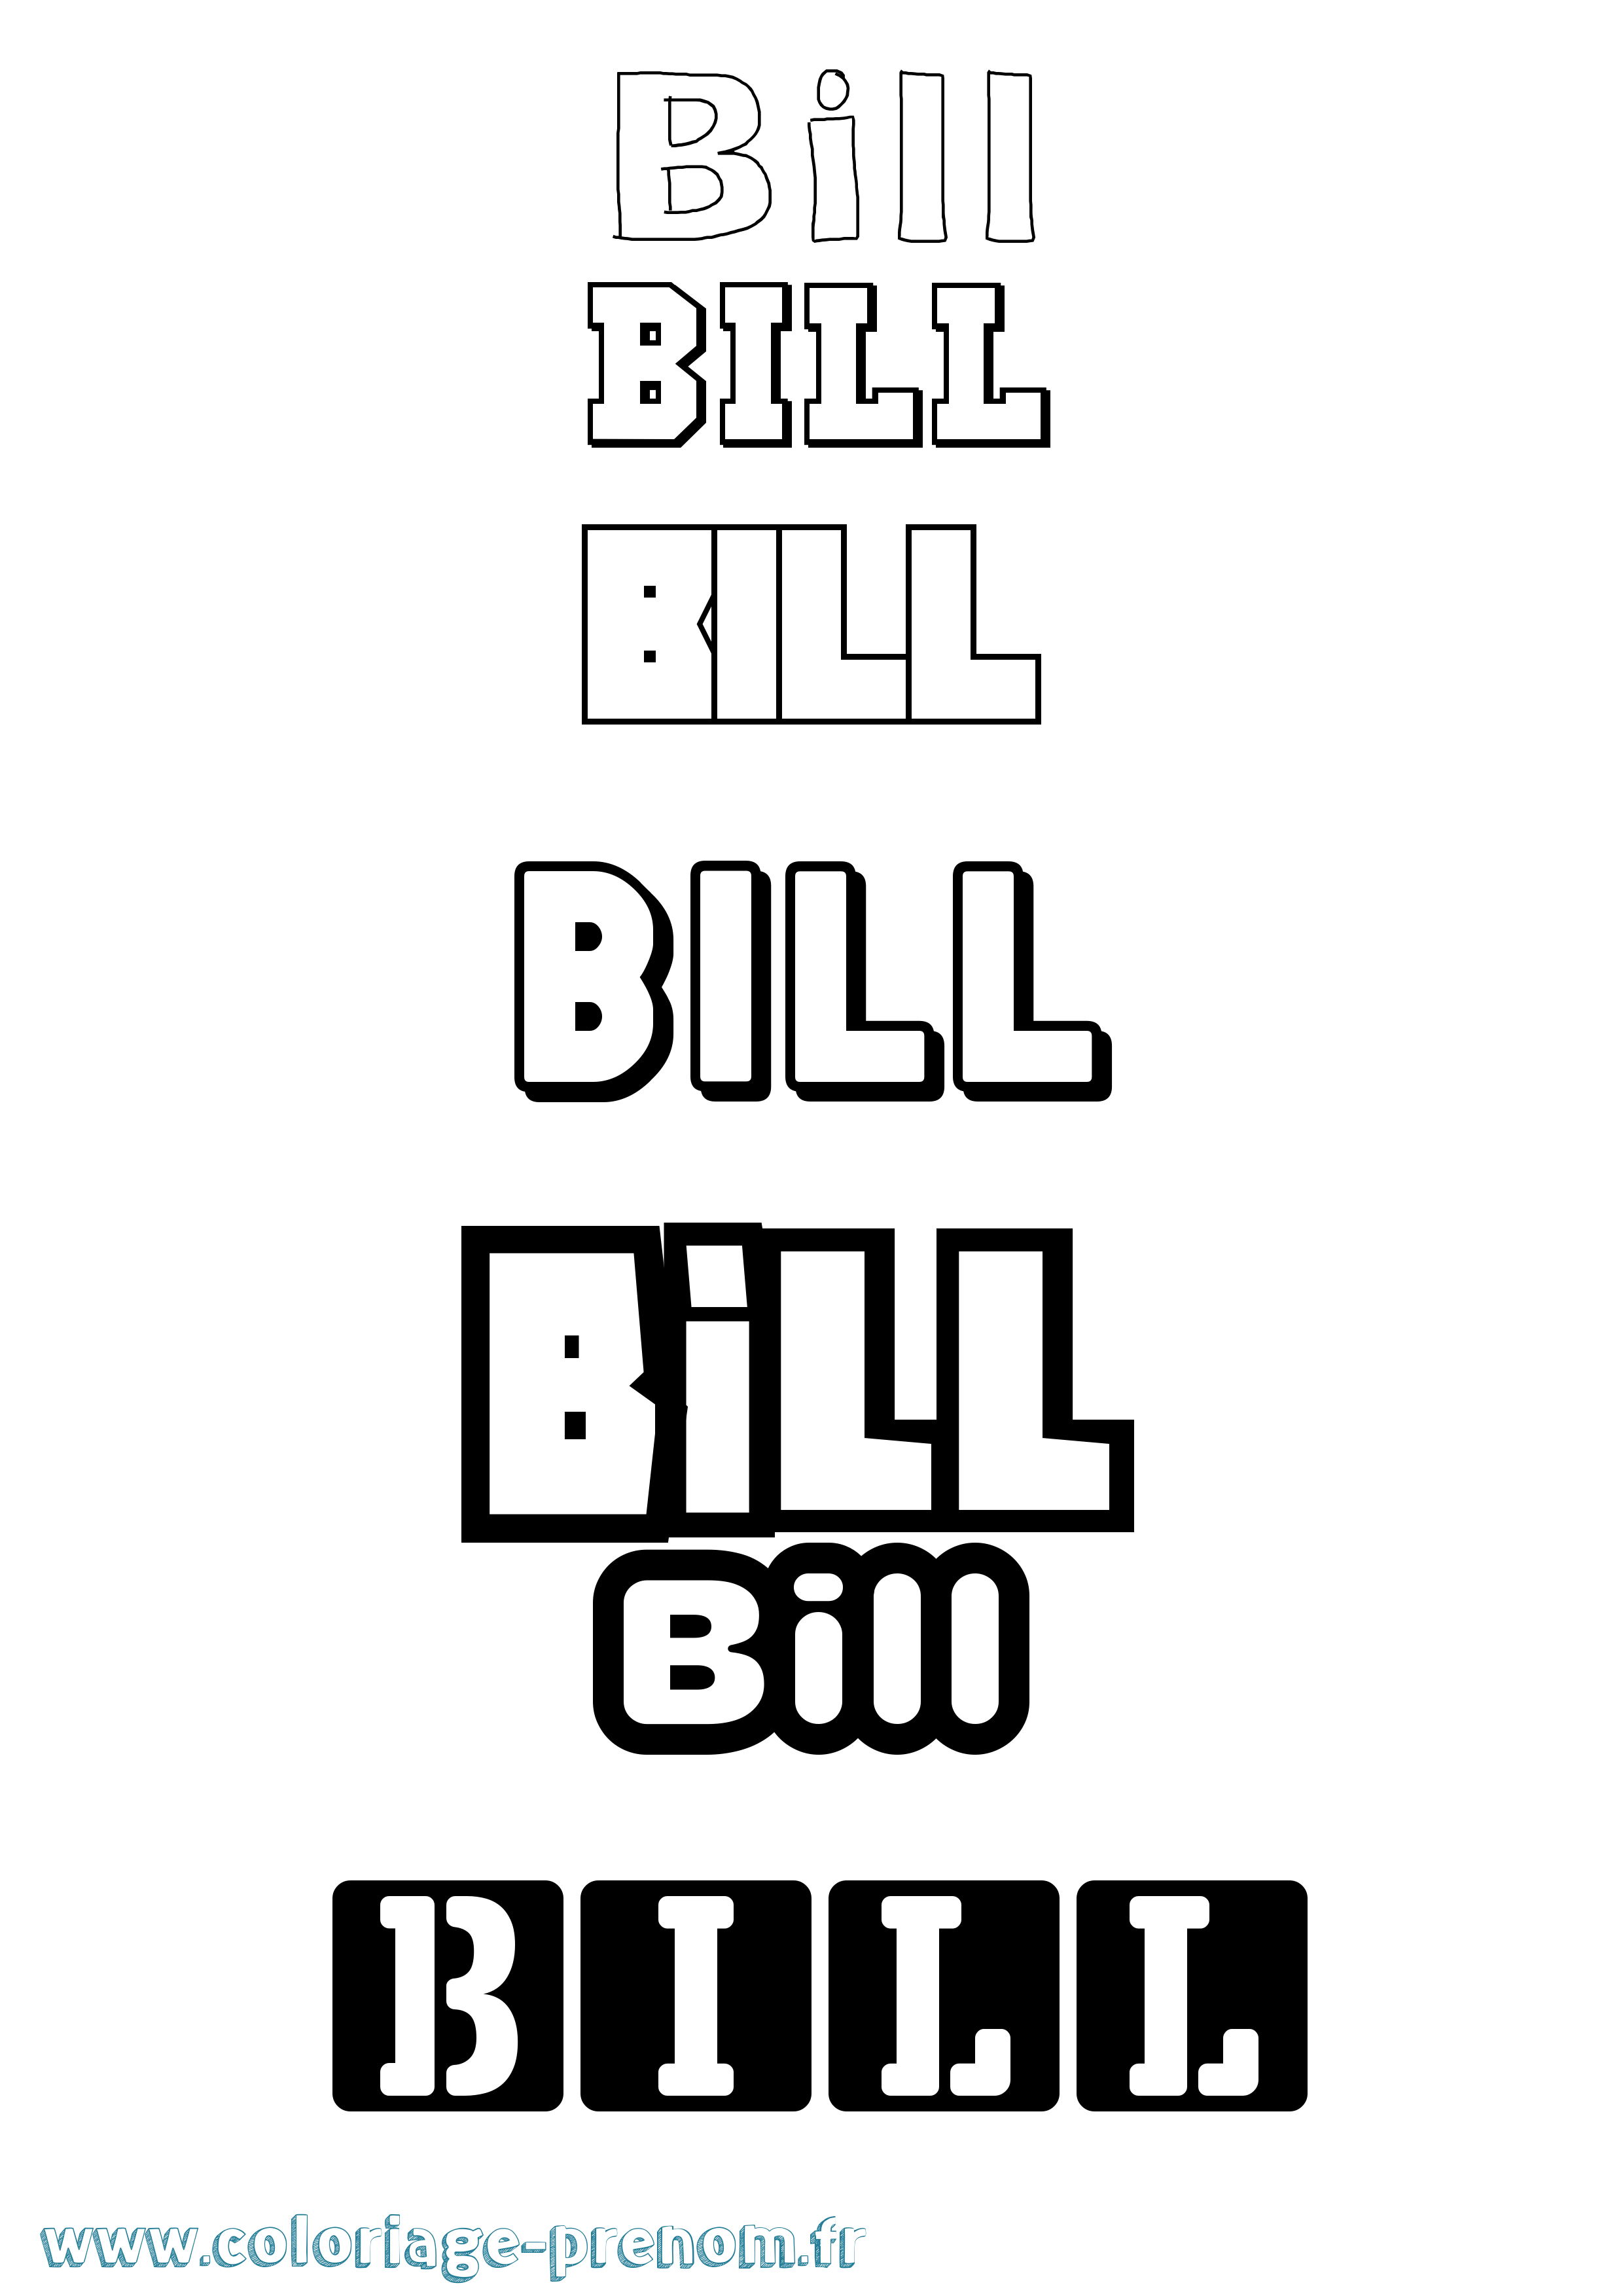 Coloriage prénom Bill Simple